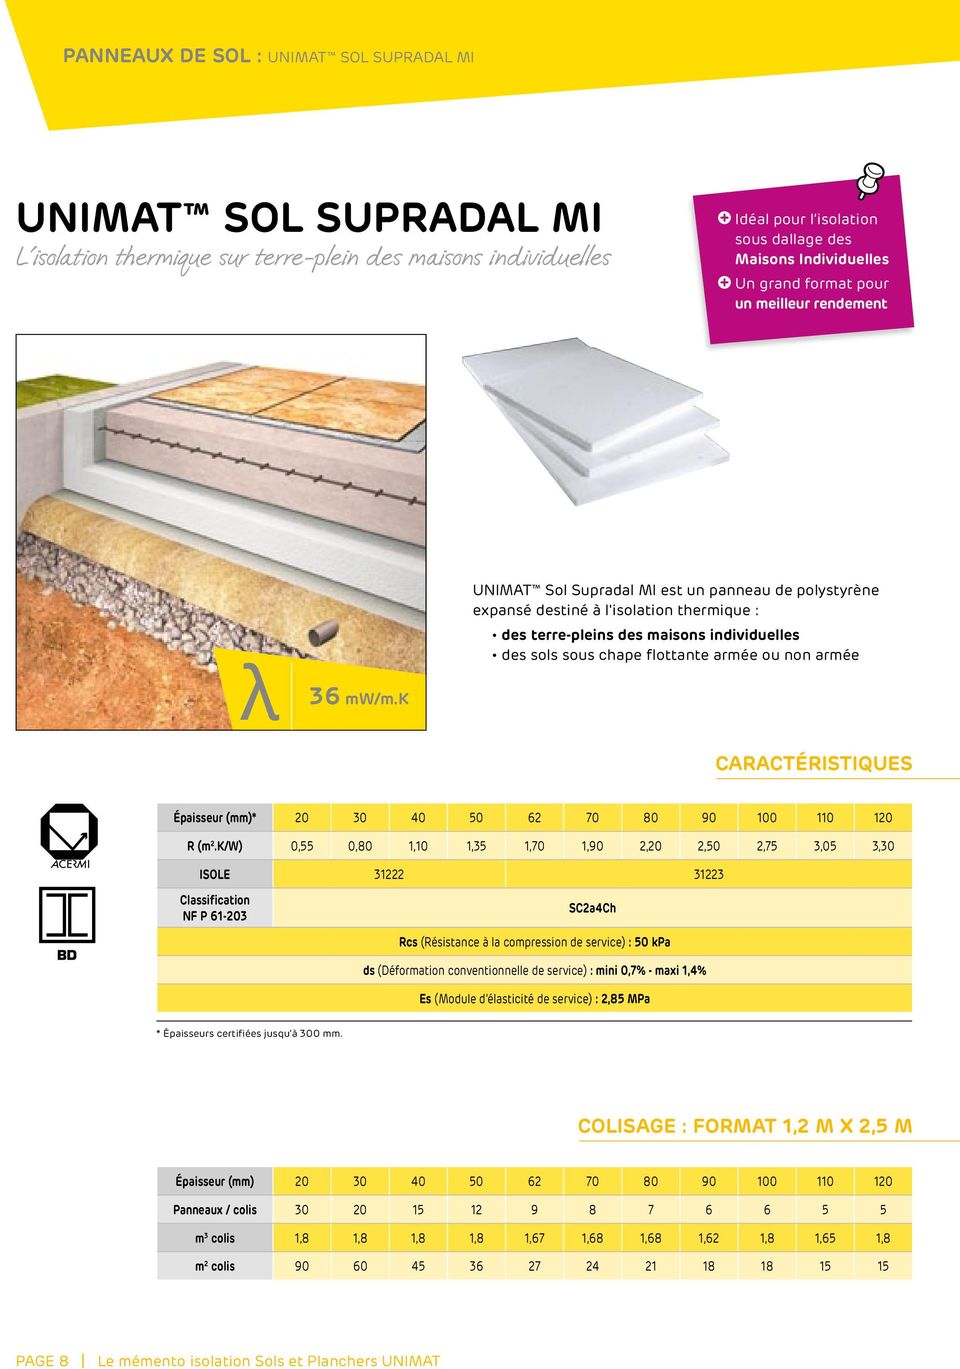 k UNIMAT Sol Supradal MI est un panneau de polystyrène expansé destiné à l'isolation thermique : des terre-pleins des maisons individuelles des sols sous chape flottante armée ou non armée